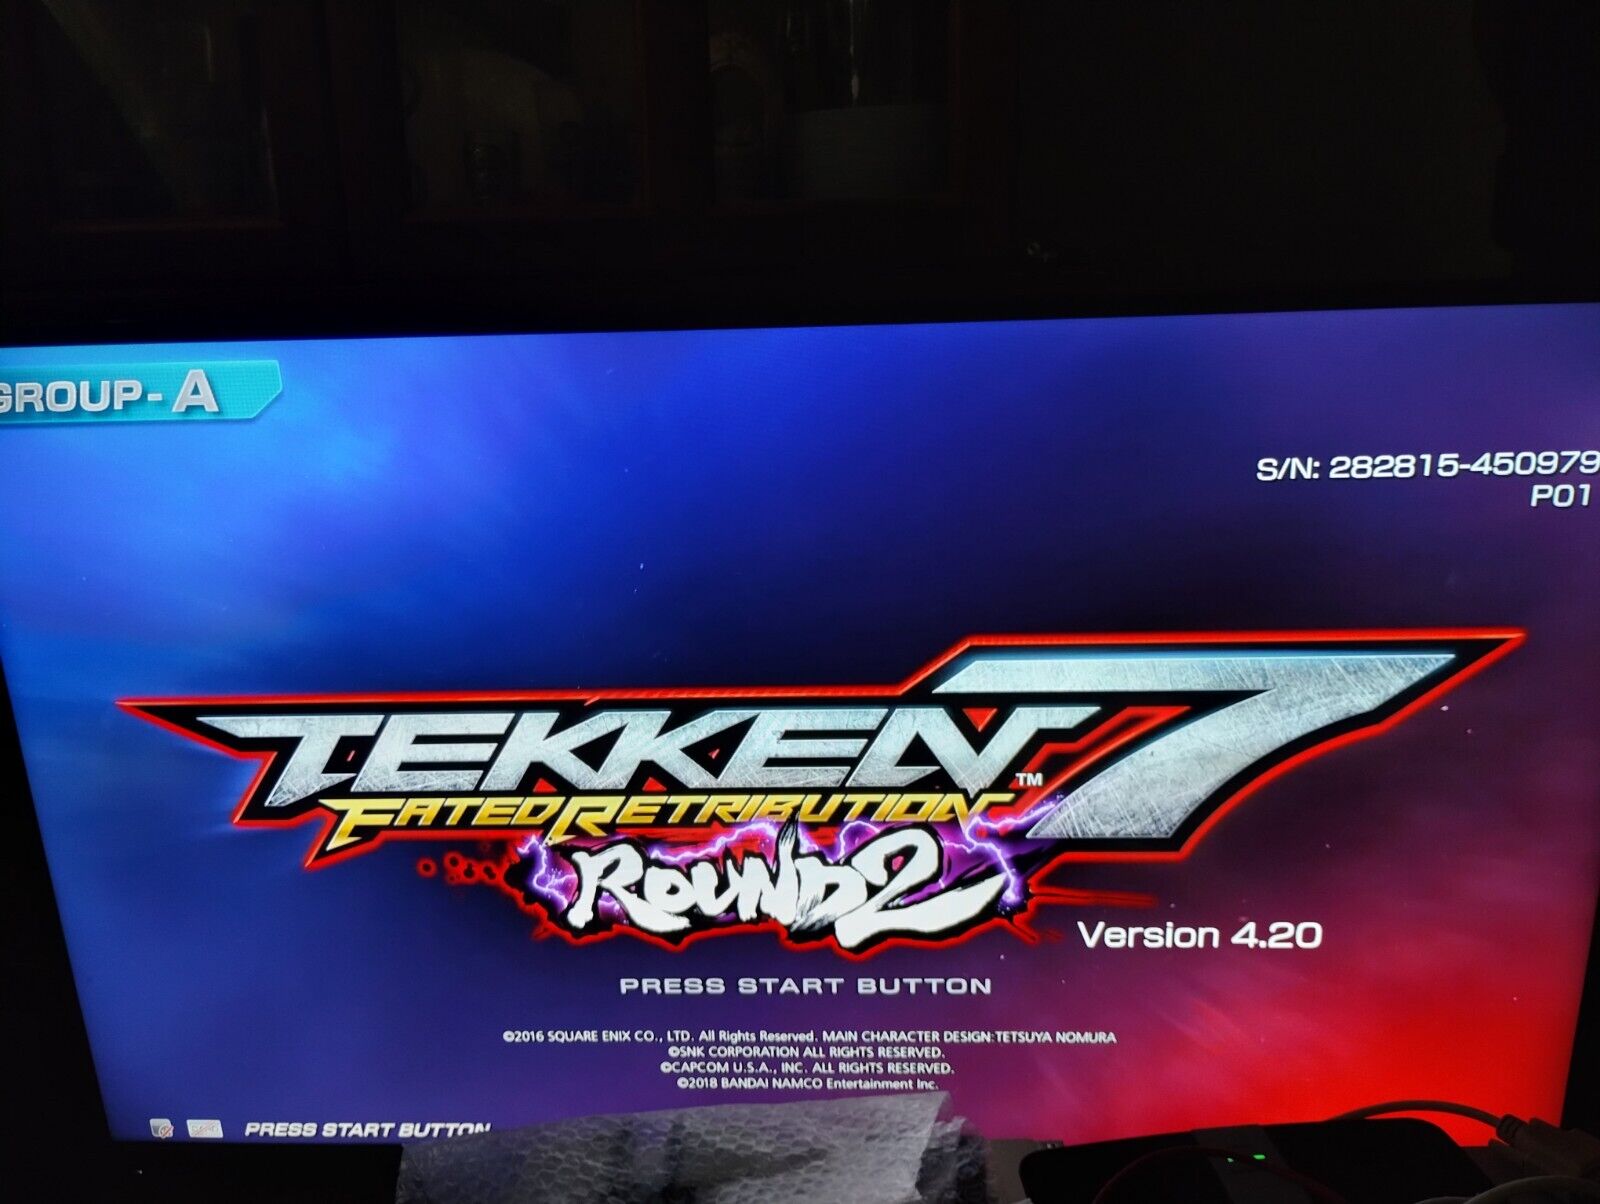 Arcade Tekken 7 FR - Round 2 - Namco - ES3 - Last Revision